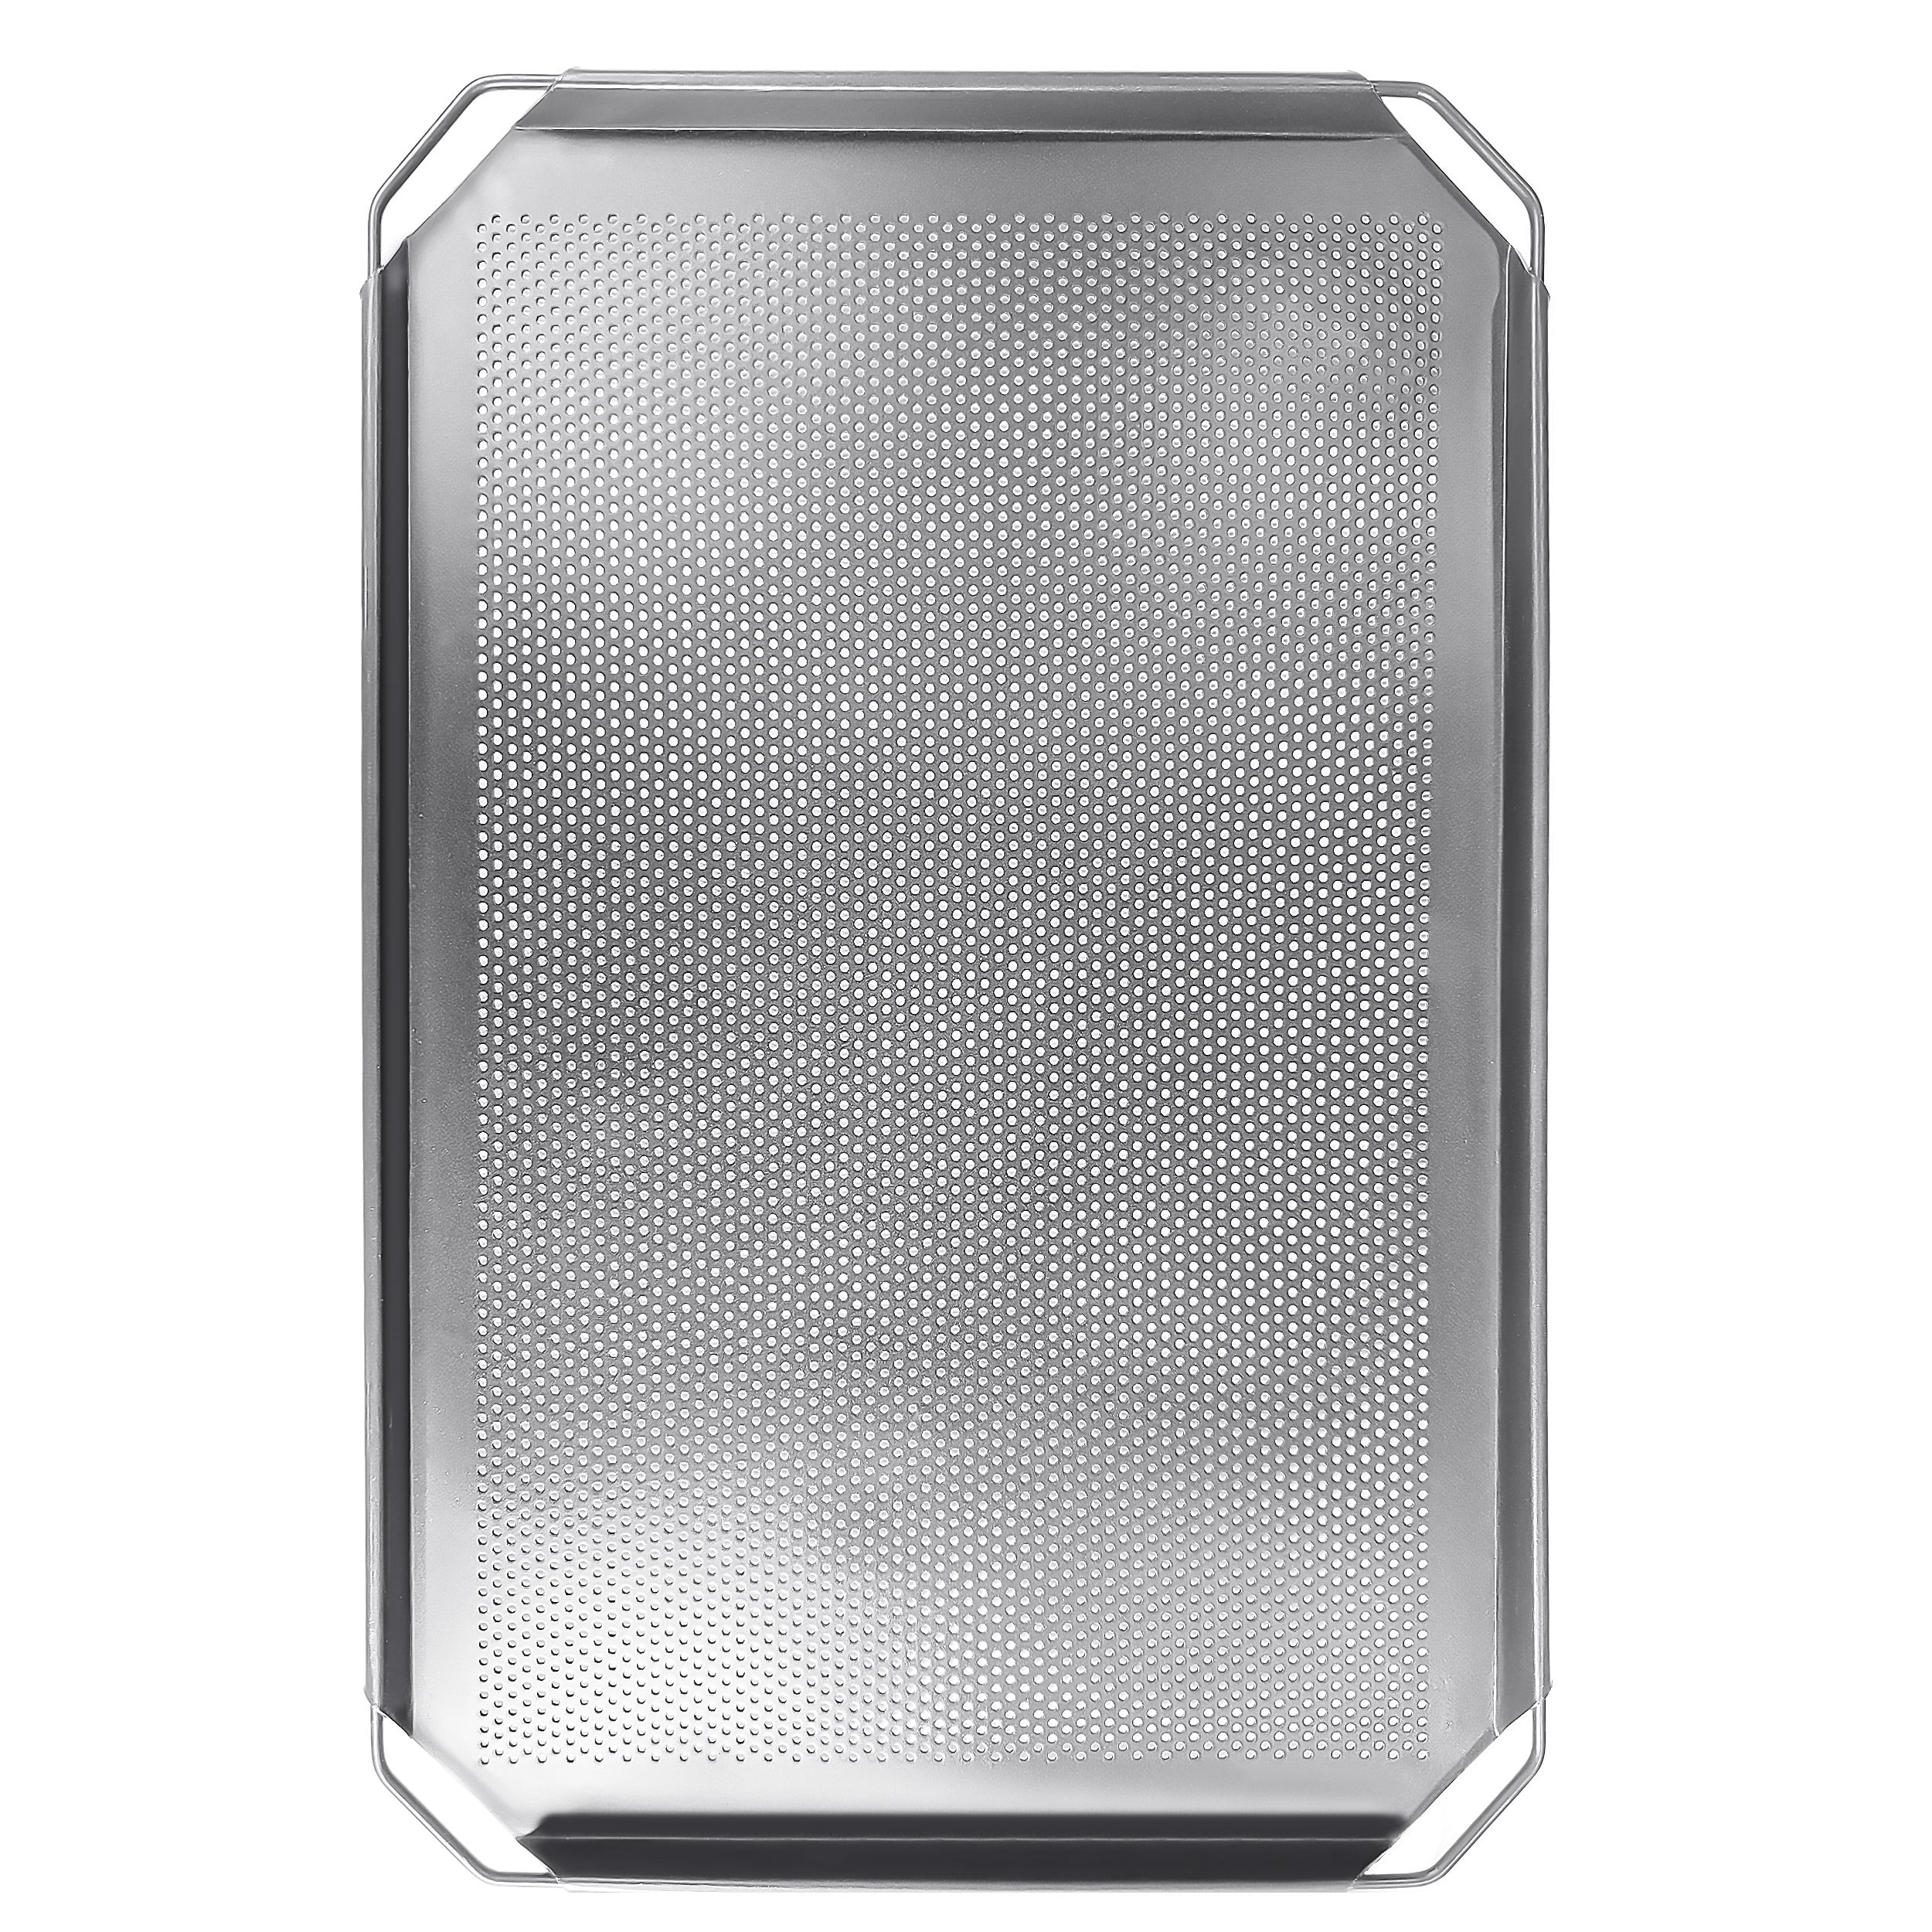 Bageplade i aluminium EN 400x600